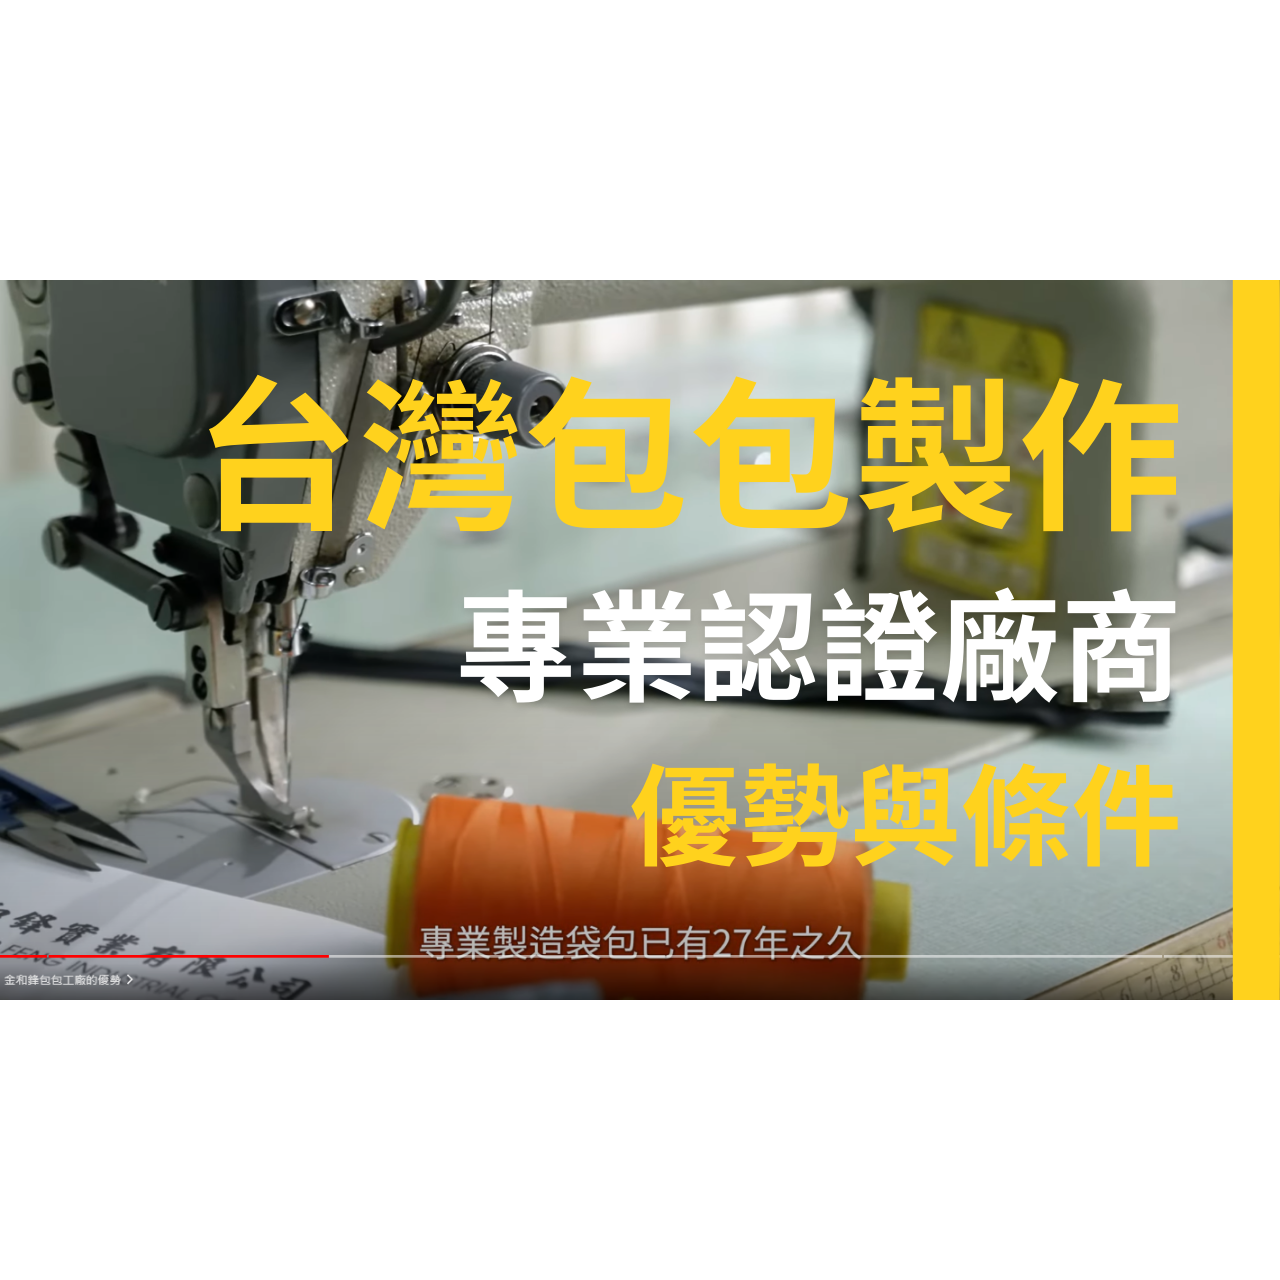 台灣包包製造供應商 - 金和鋒實業